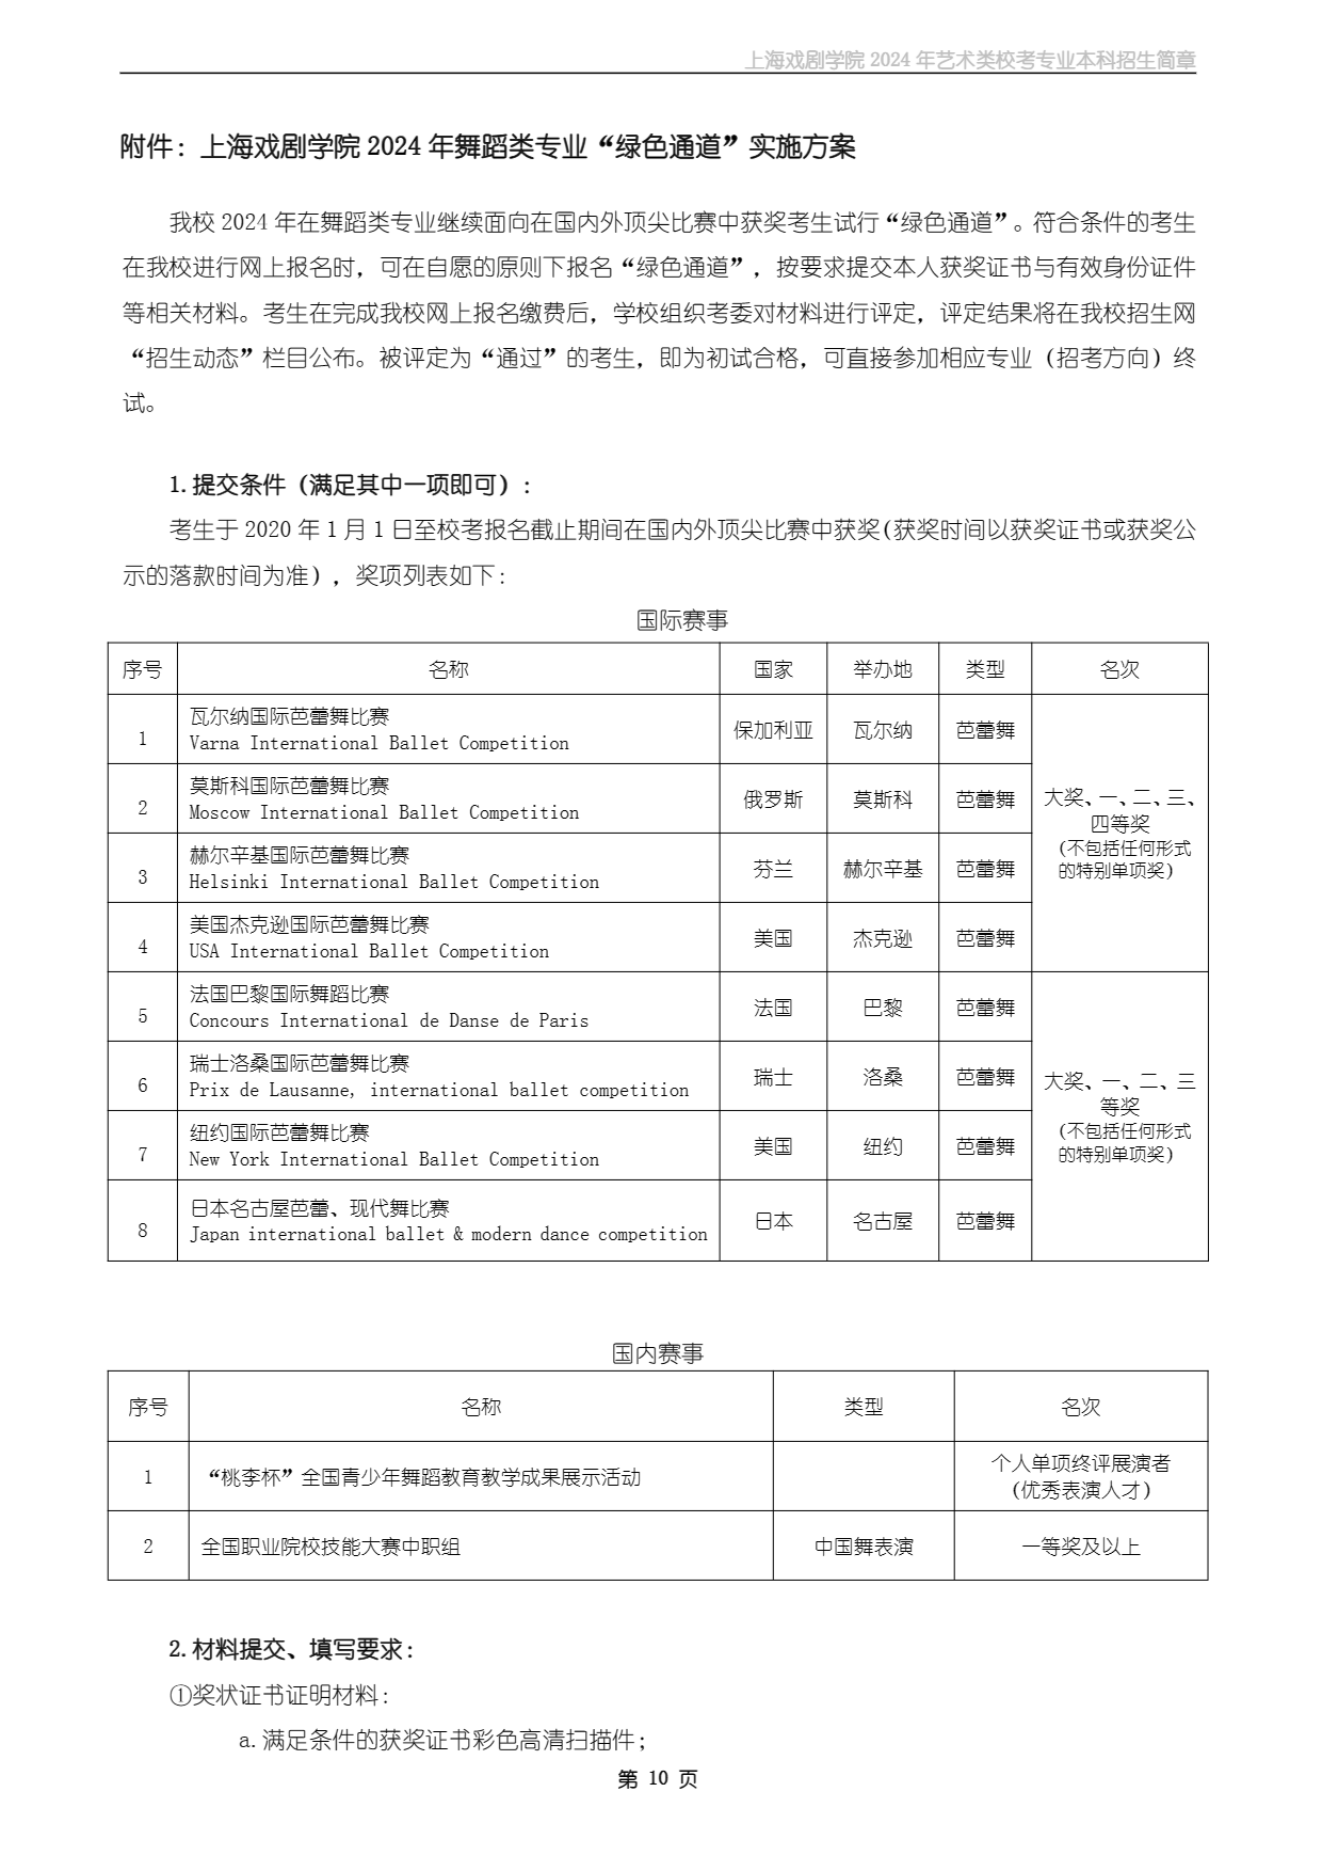 上海戏剧学院2024年艺术类校考专业本科招生简章_09.png